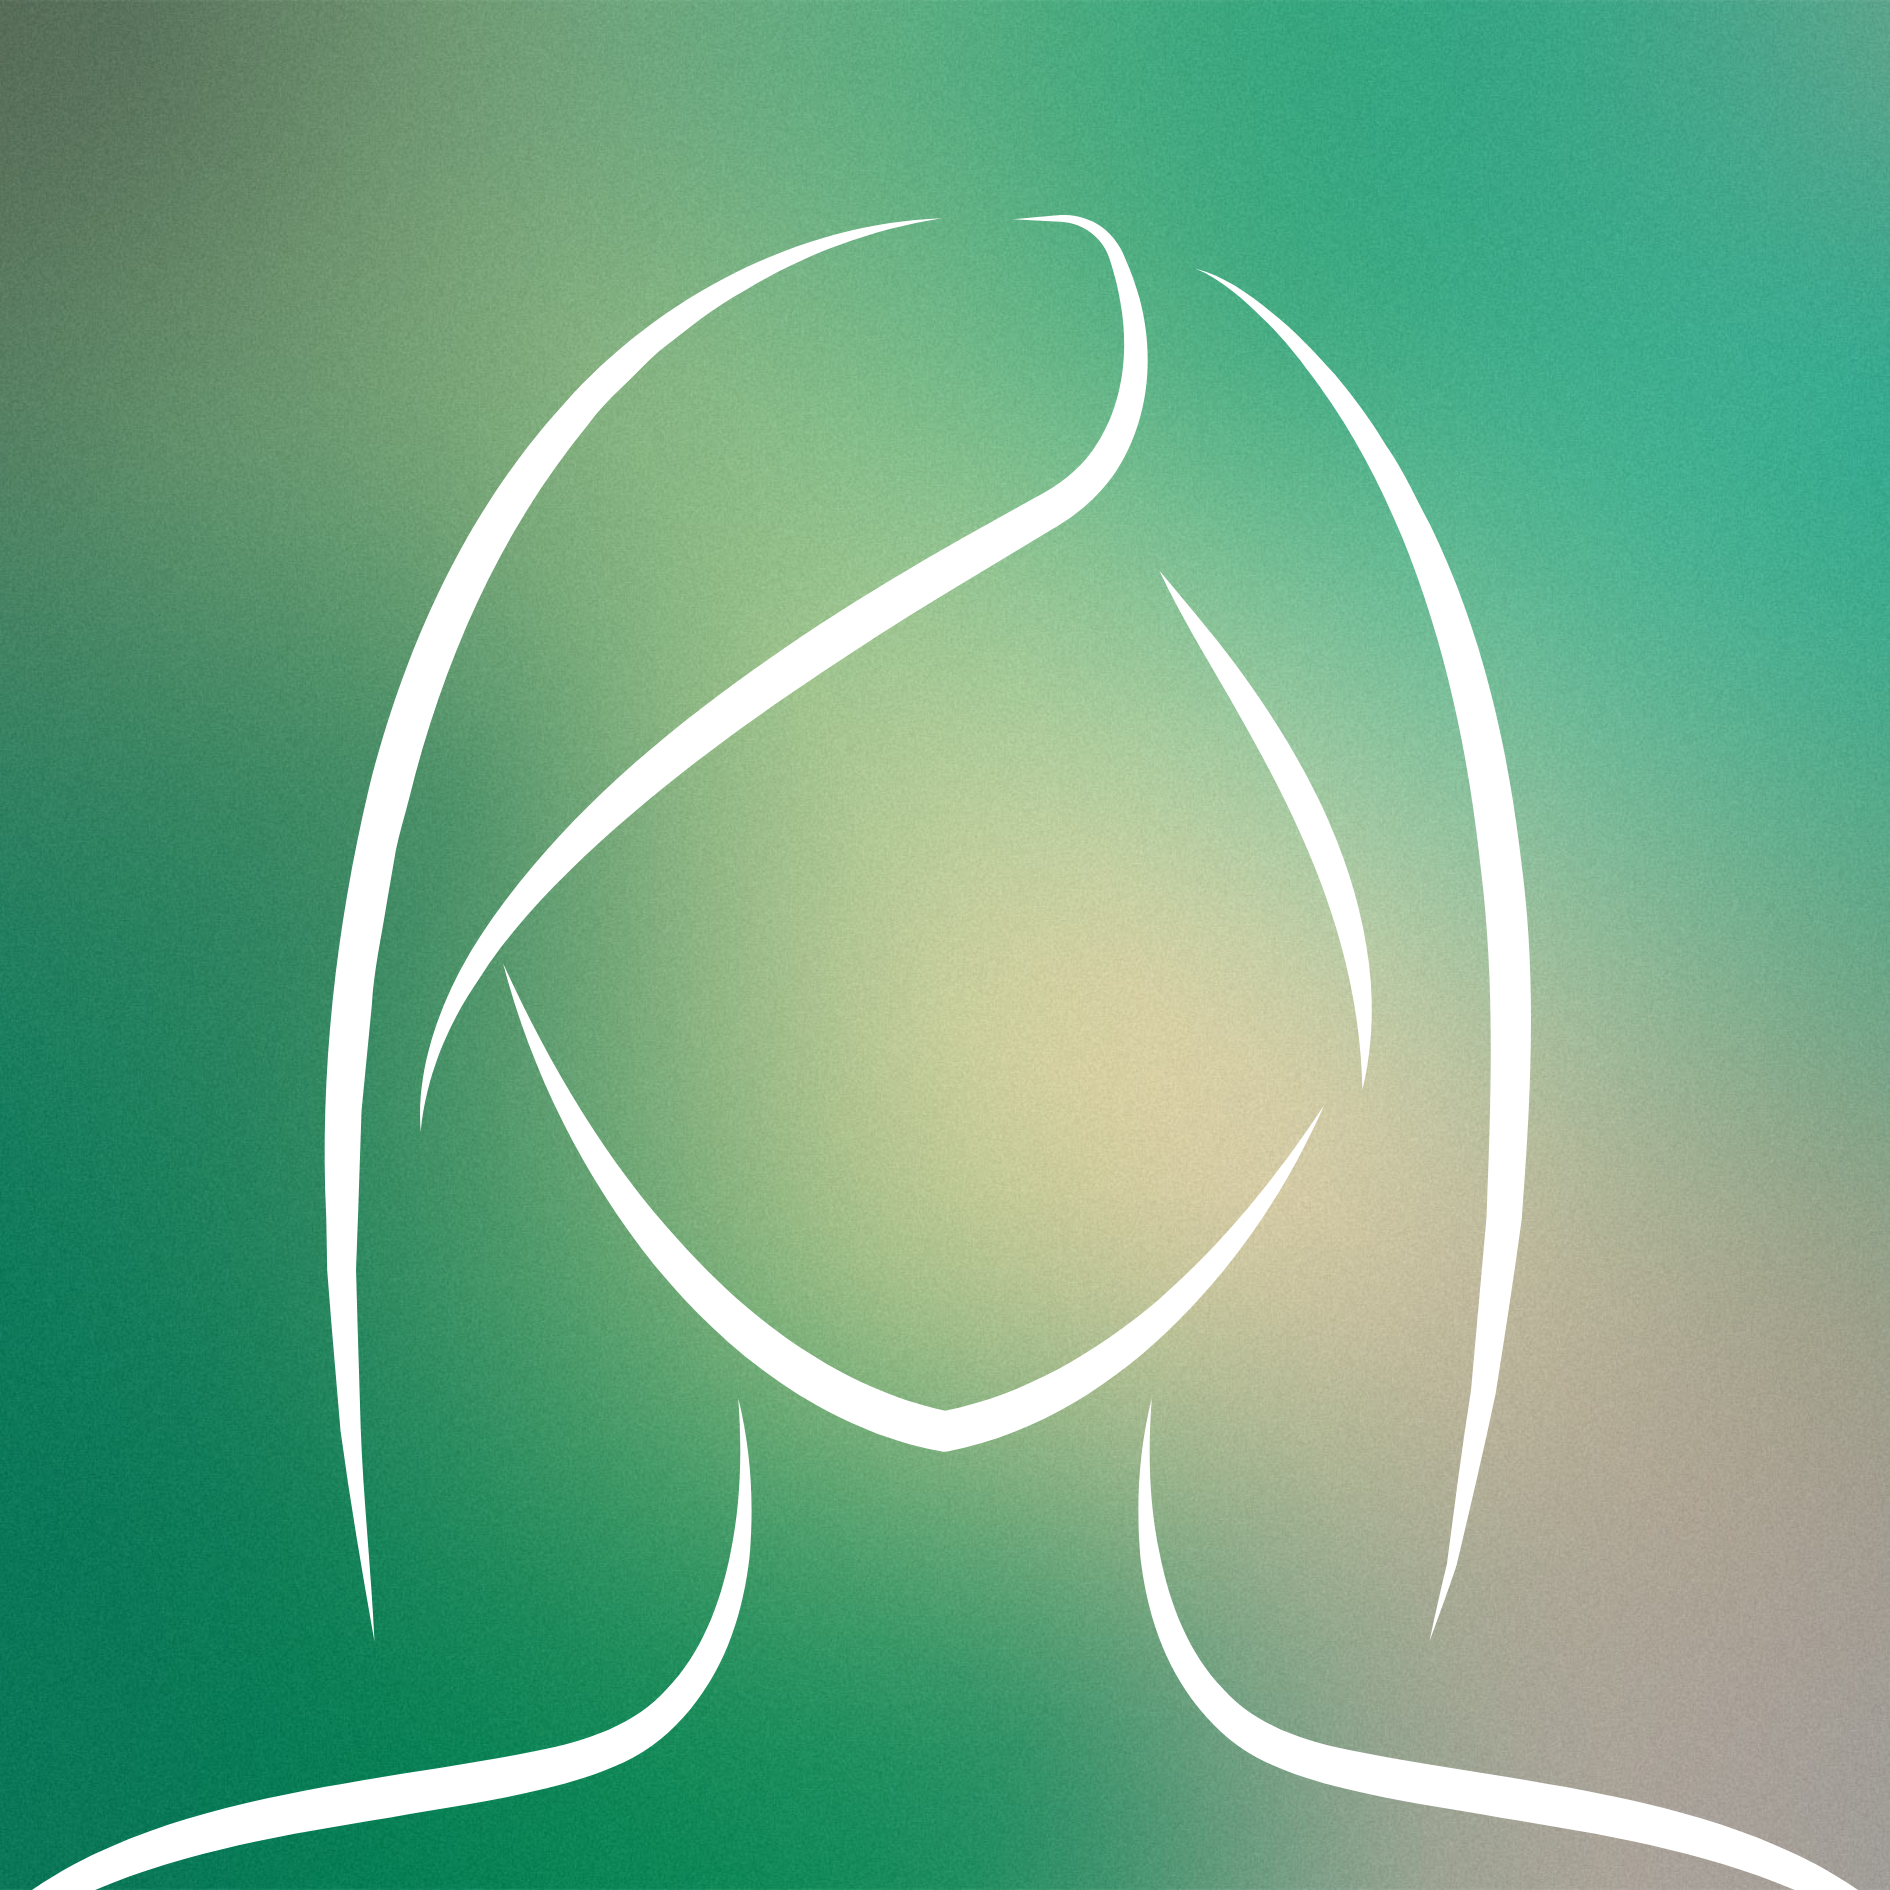 Abstrakt illustrierte Person auf grünem Hintergrund.